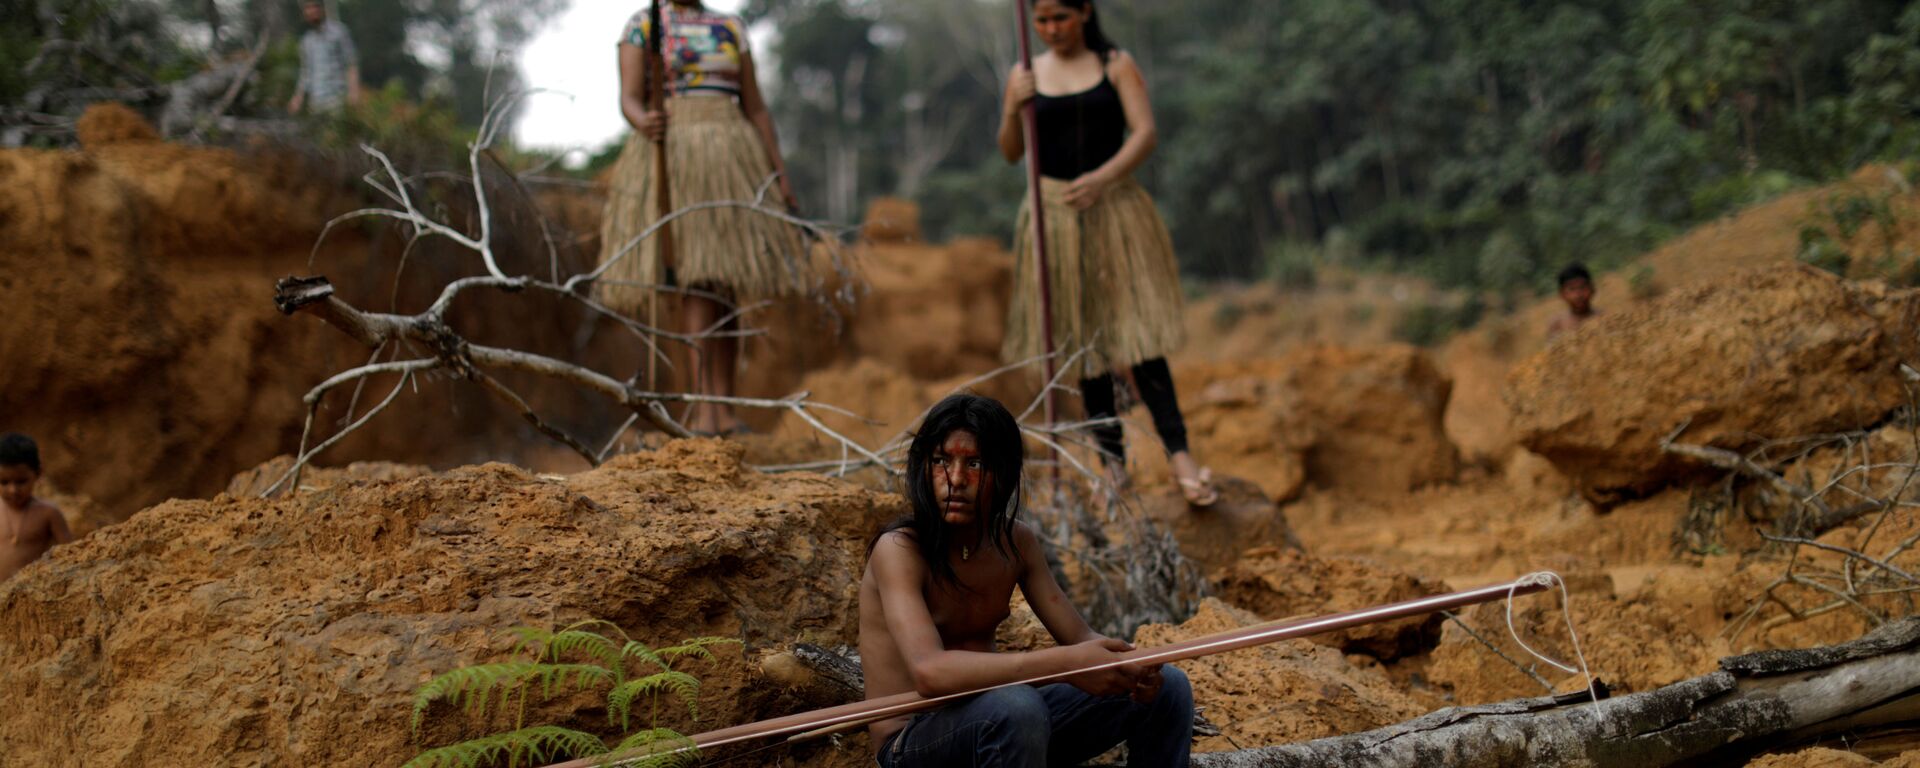 Indígenas da etnia Mura mostram área desmatada próximo ao município de Humaitá, no Amazonas - Sputnik Brasil, 1920, 08.02.2021